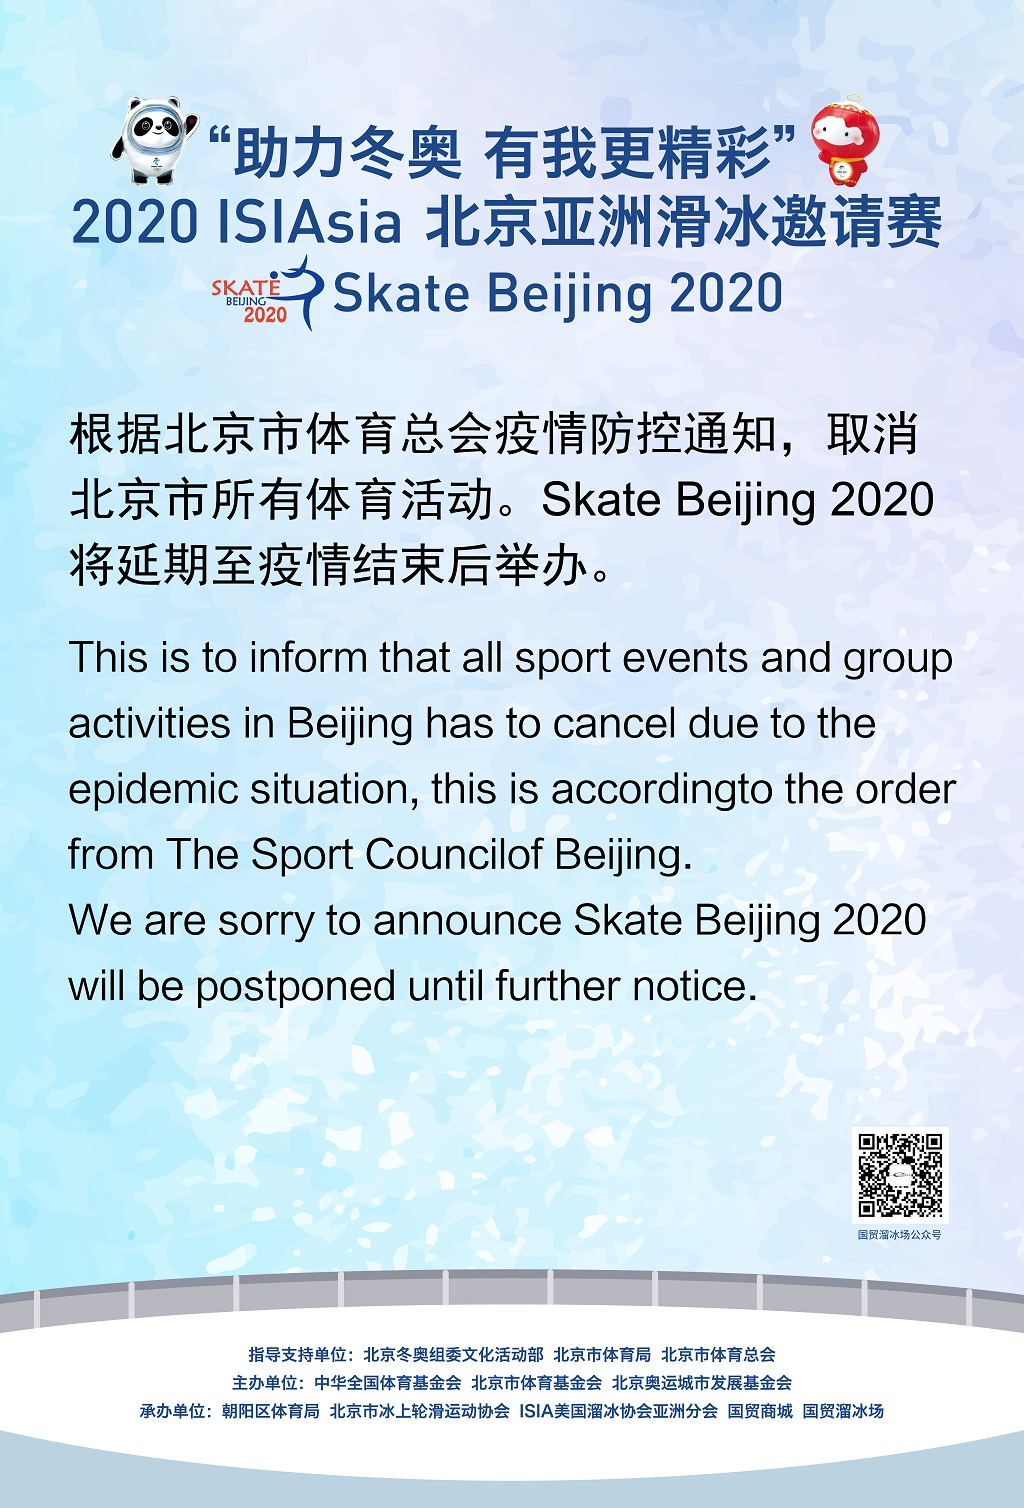 Postponed of Skate Beijing 2020